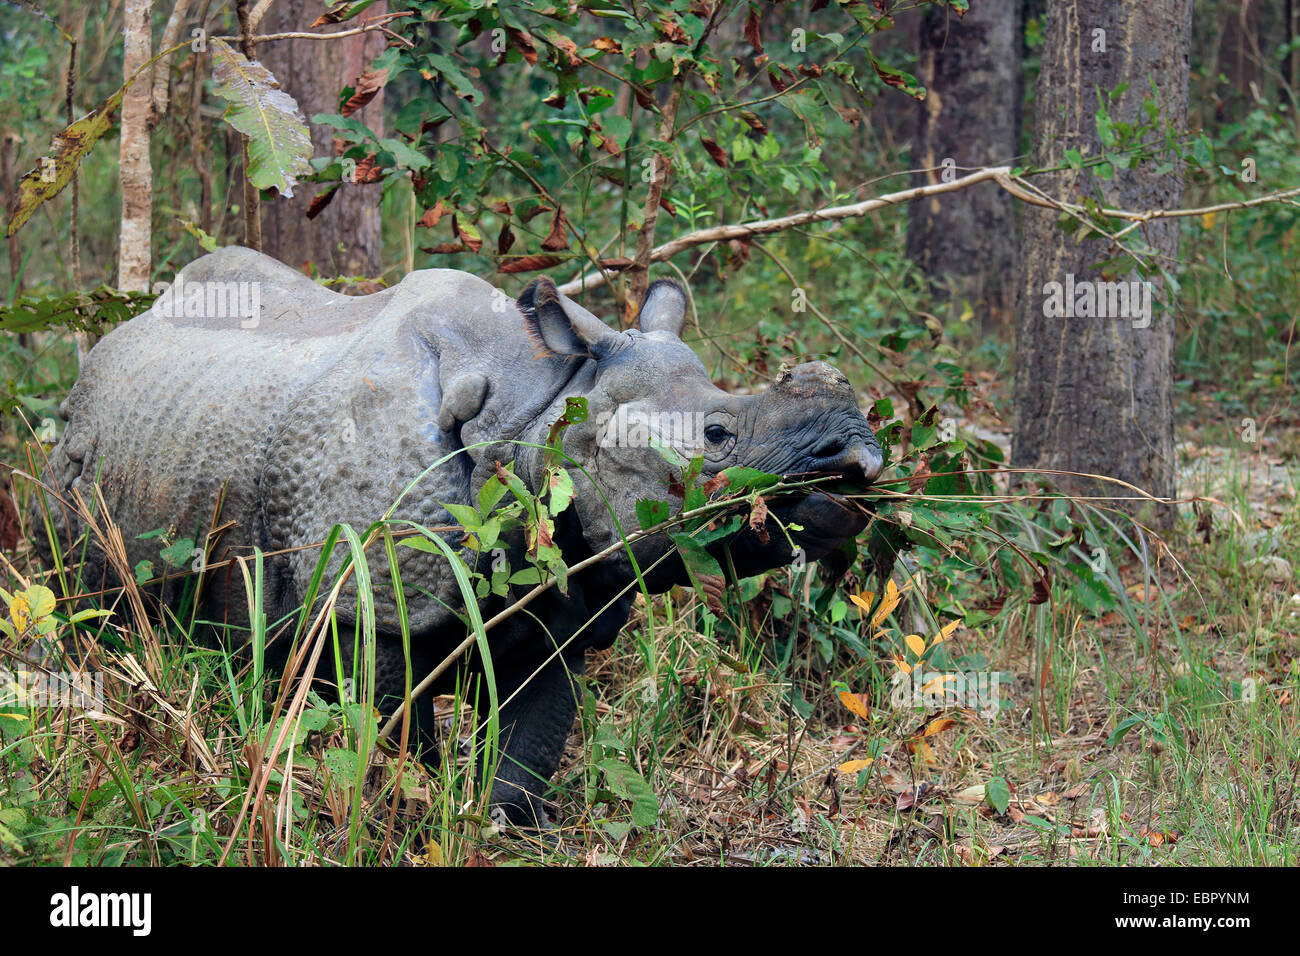 Plus de rhinocéros indien, Indien Grand rhinocéros à une corne (Rhinoceros unicornis), debout sur un chemin et de manger, Népal, Terai, parc national de Chitwan Banque D'Images